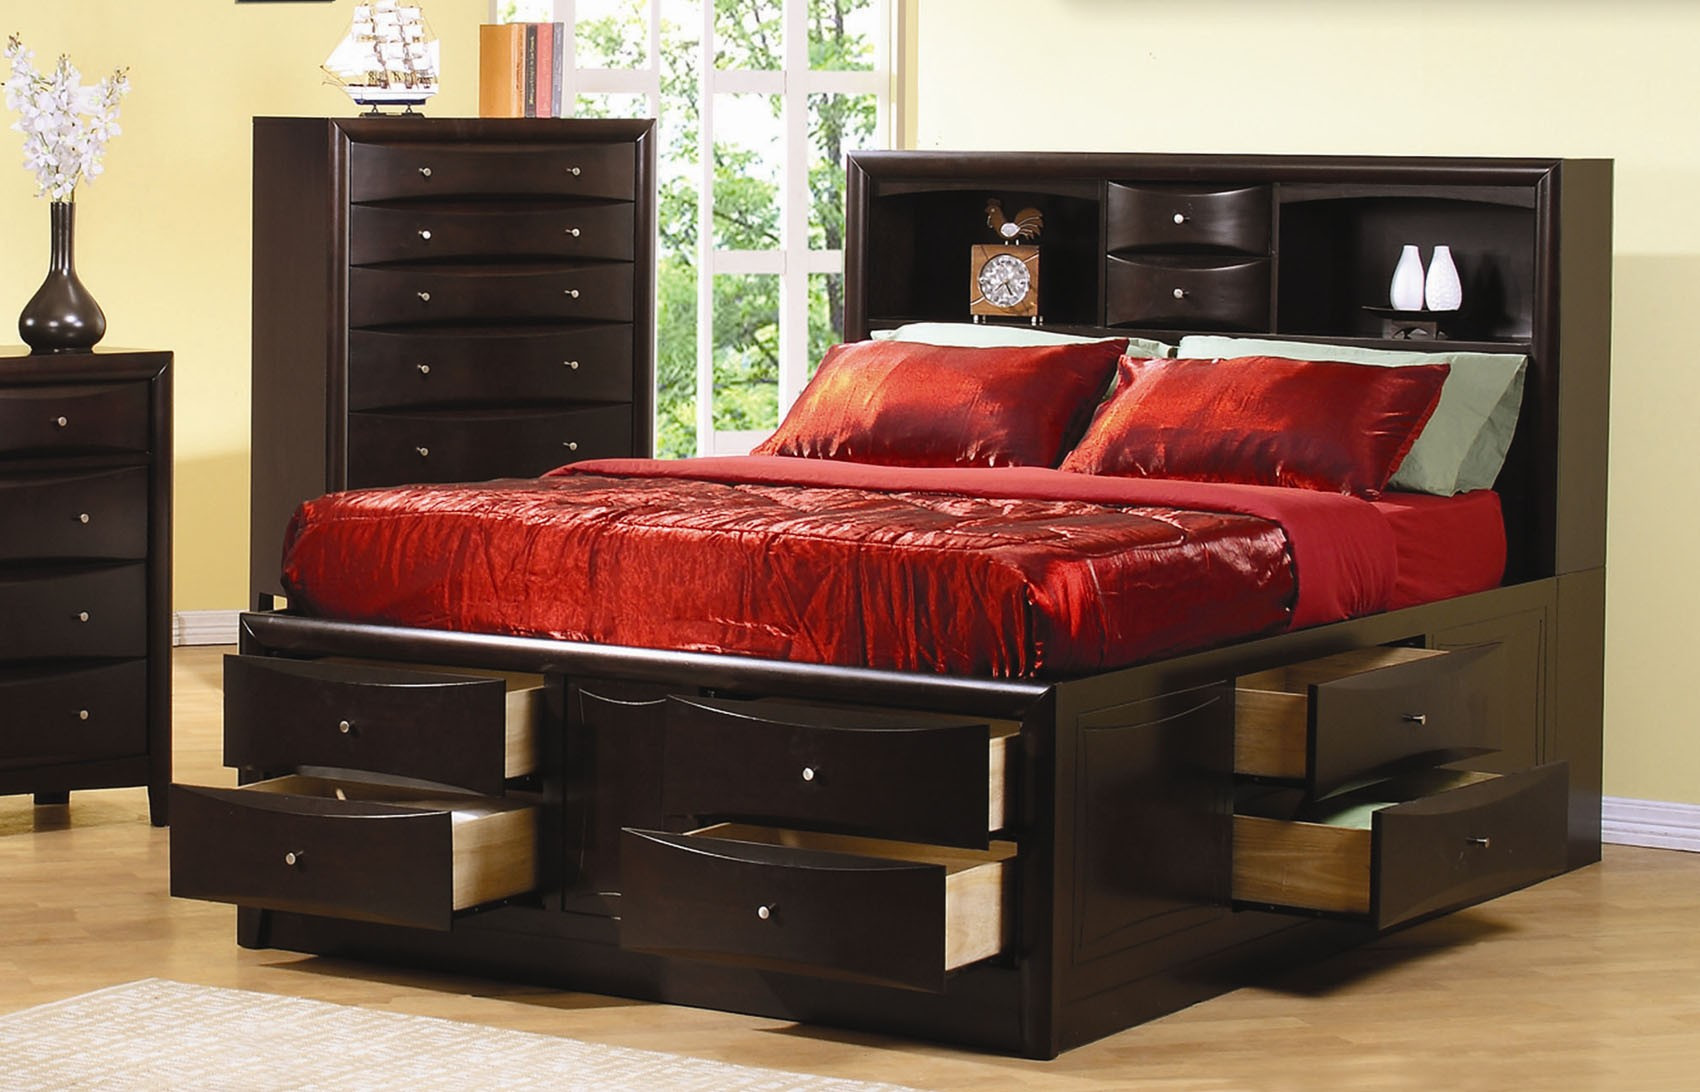 Queen Size Storage Bedroom Sets
 Queen Storage Bed Plans